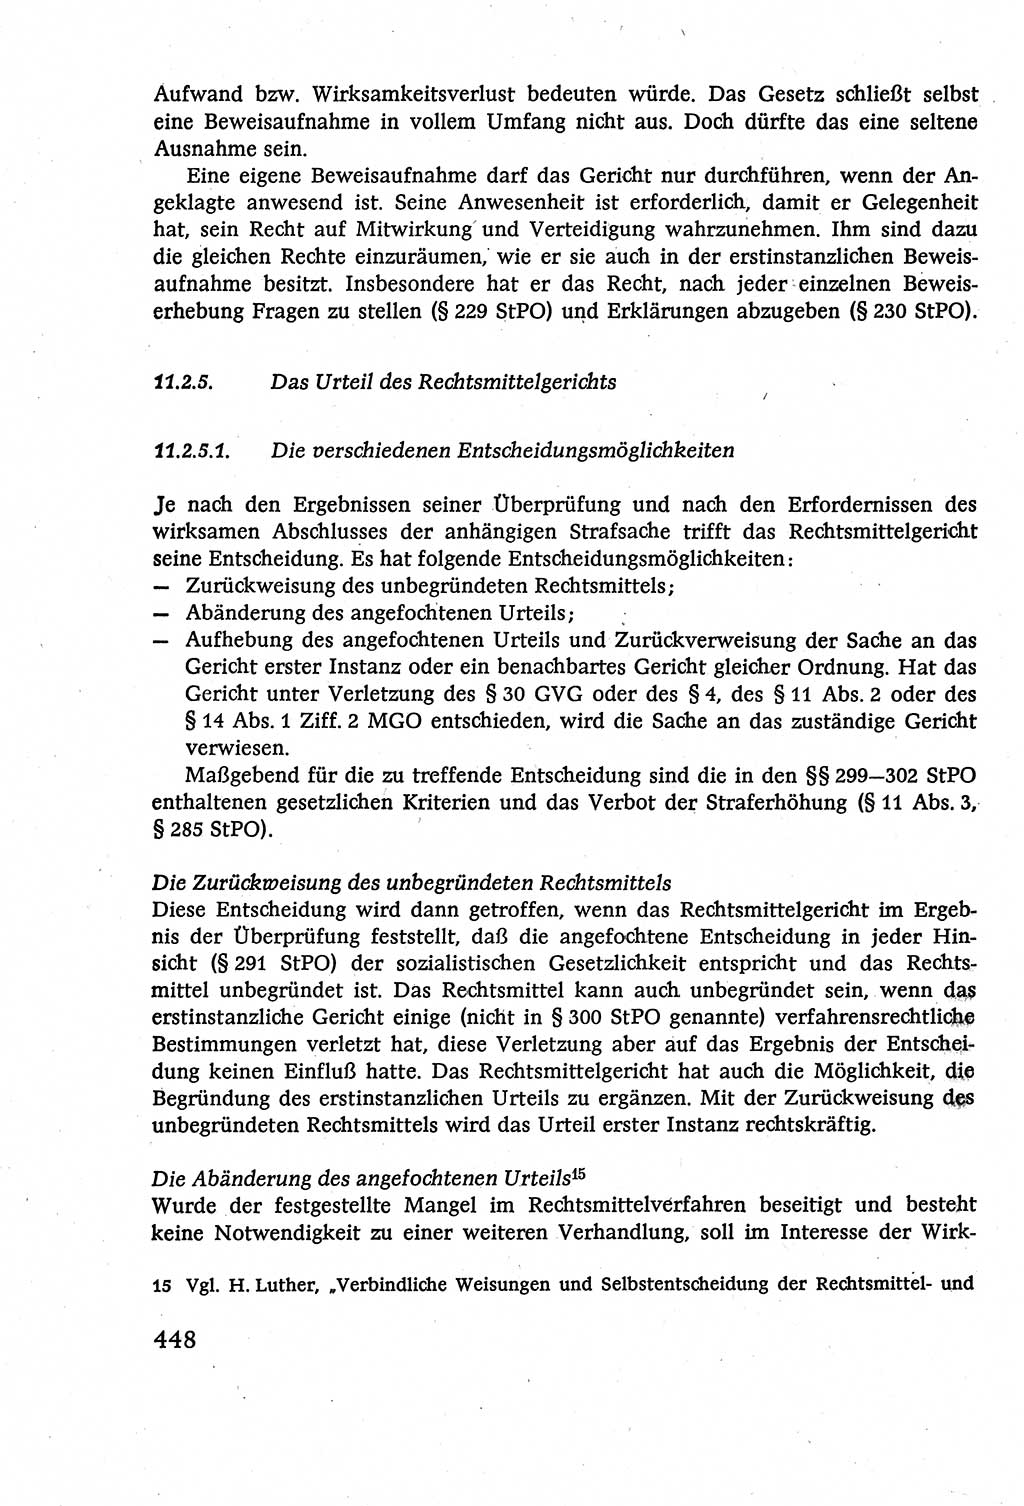 Strafverfahrensrecht [Deutsche Demokratische Republik (DDR)], Lehrbuch 1977, Seite 448 (Strafverf.-R. DDR Lb. 1977, S. 448)